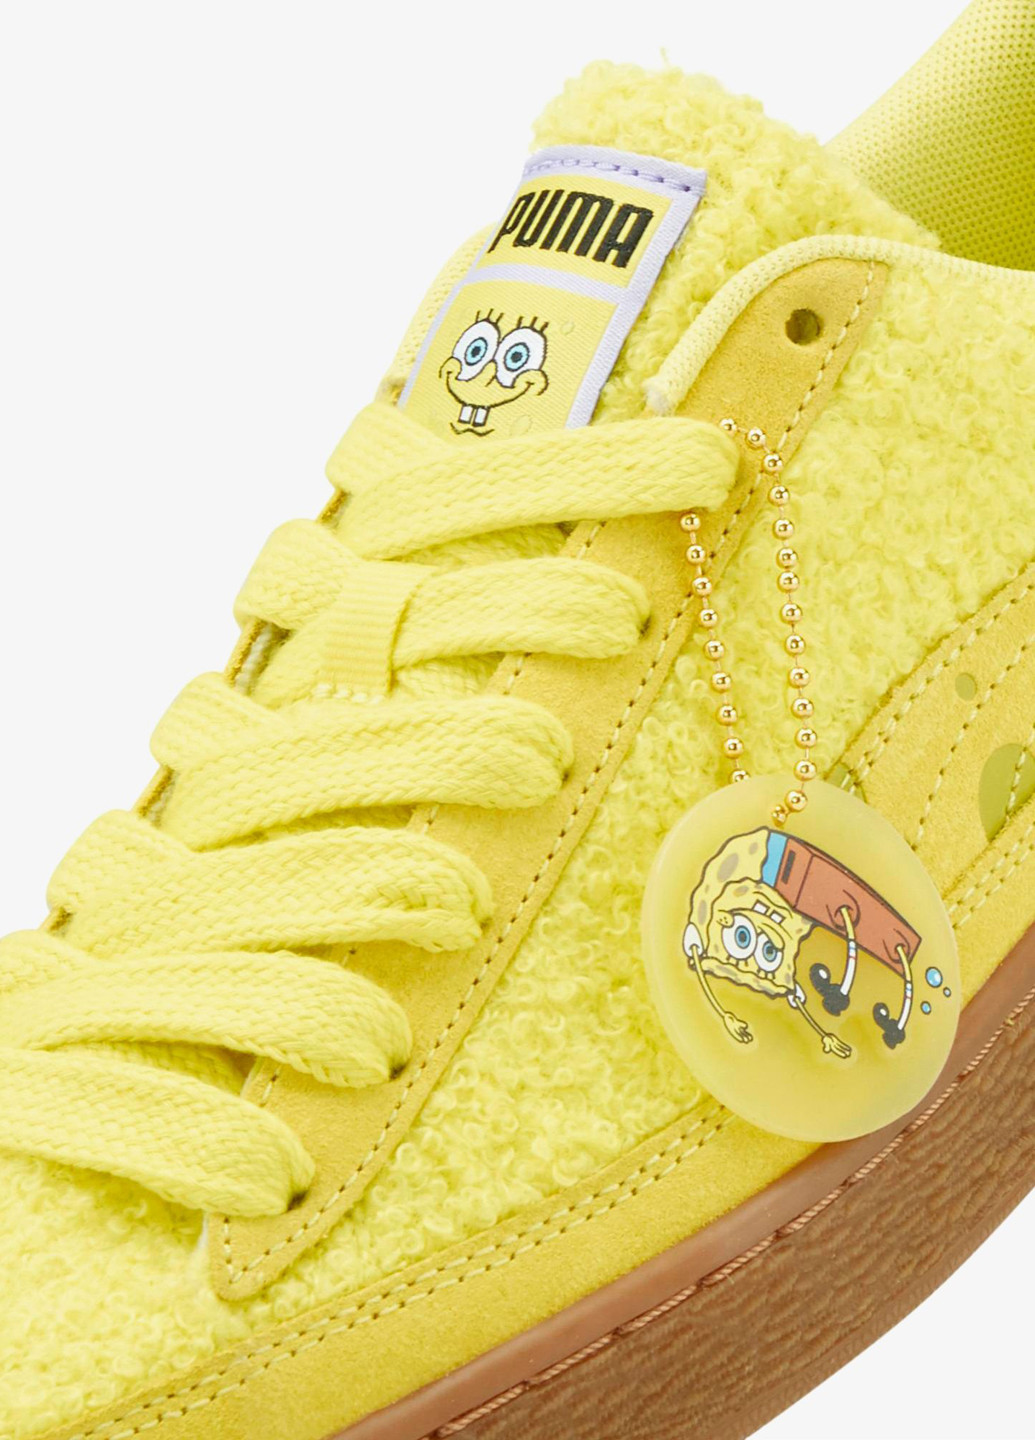 Жовті всесезонні кросівки Puma X SPONGEBOB SUEDE